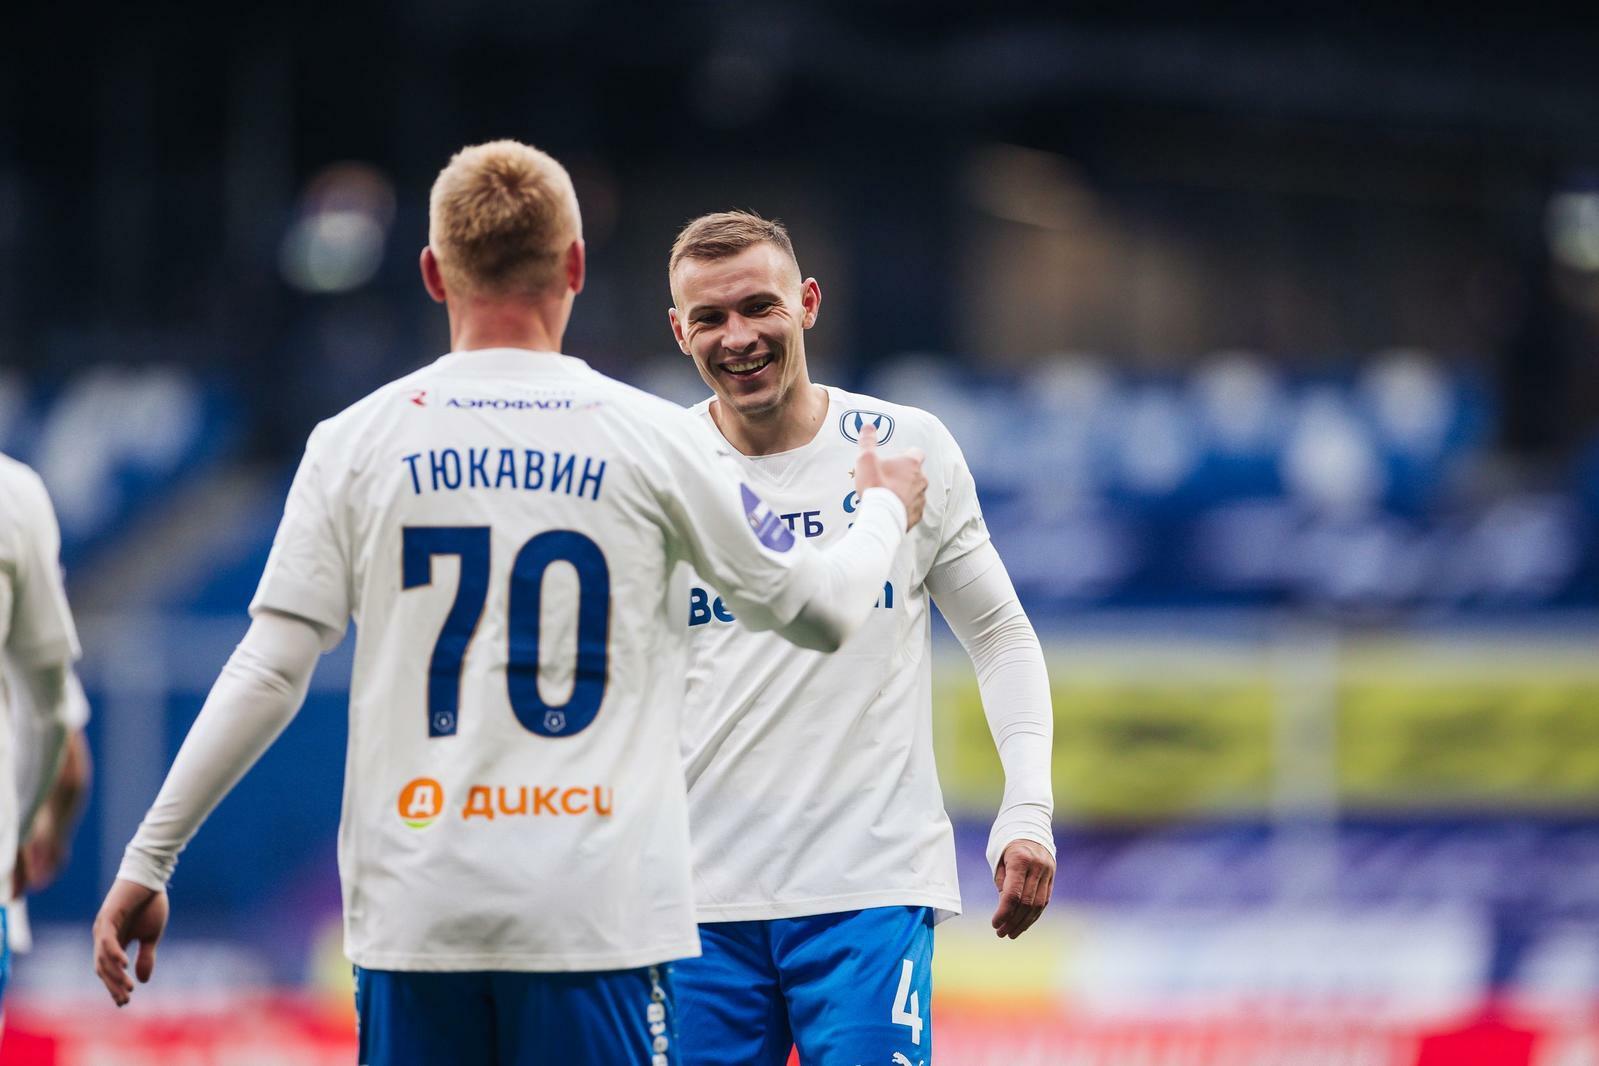 Noticias del FC "Dynamo" Moscú | Sergey Parshivlyuk: "Tenemos fe en el equipo y un resultado positivo". Sitio oficial del club Dynamo.